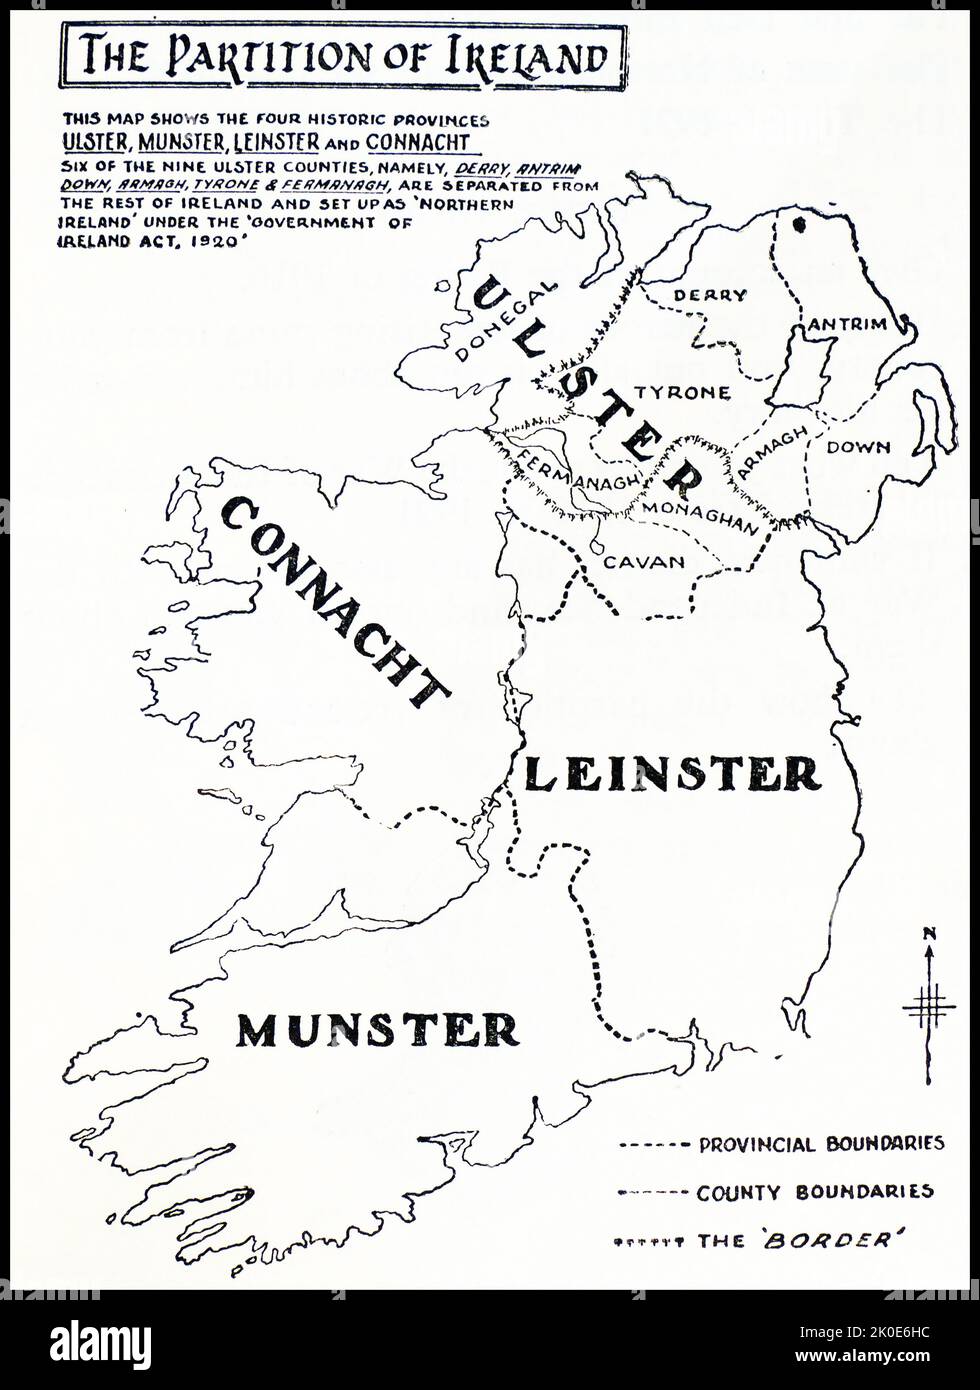 Karte zeigt die Teilung Irlands, die dazu führte, dass Irland in zwei selbstregierende politische Länder aufgeteilt wurde: Nordirland und Südiland. Sie wurde am 3. Mai 1921 gemäß dem Government of Ireland Act 1920 erlassen. Stockfoto